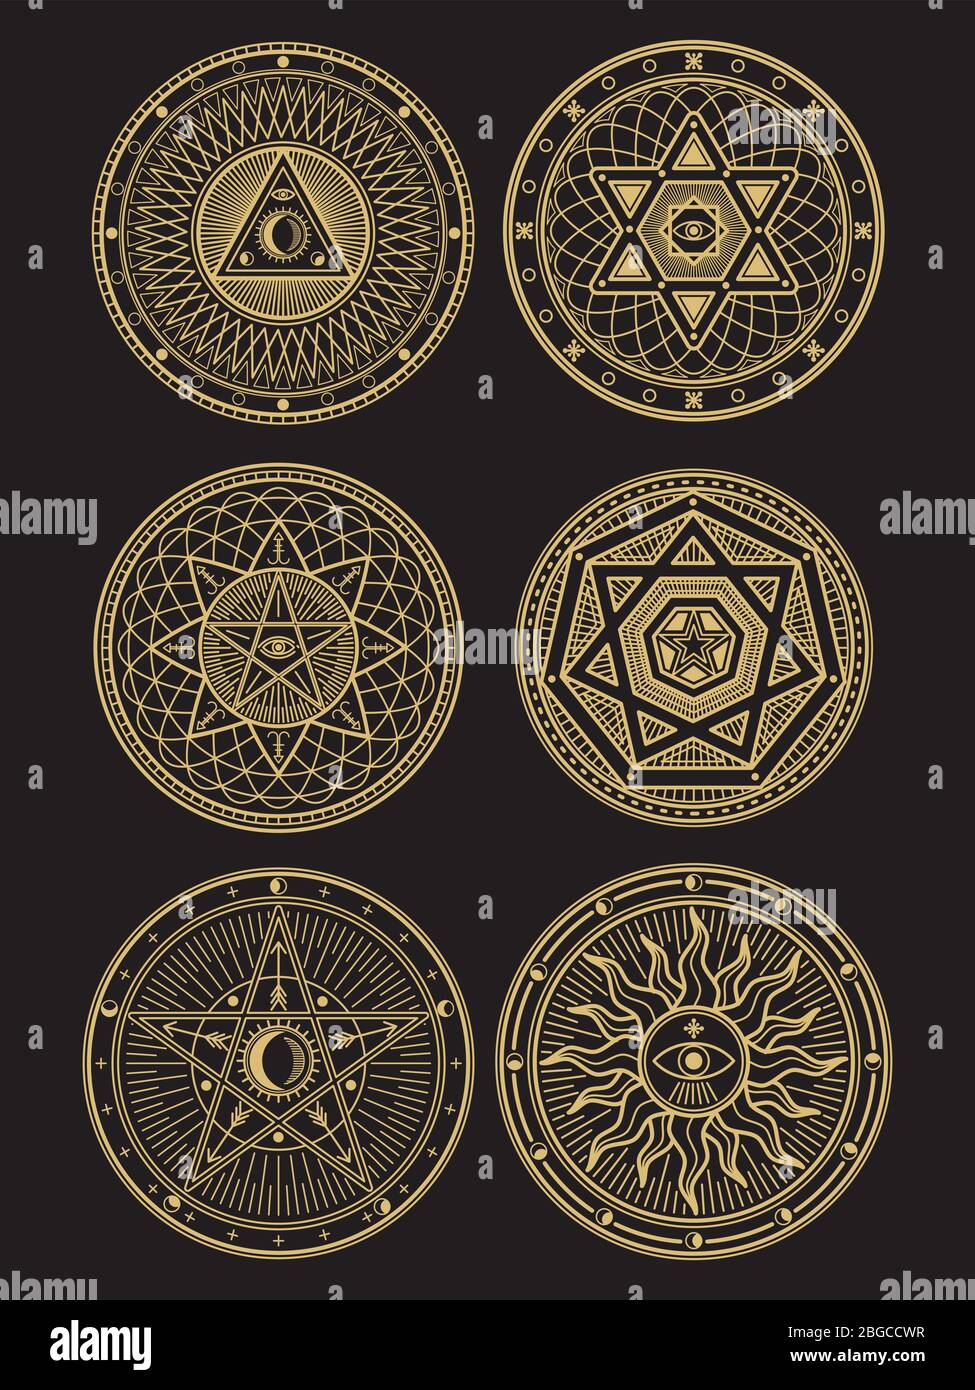 Simbolos espirituales fotografías e imágenes de alta resolución - Alamy